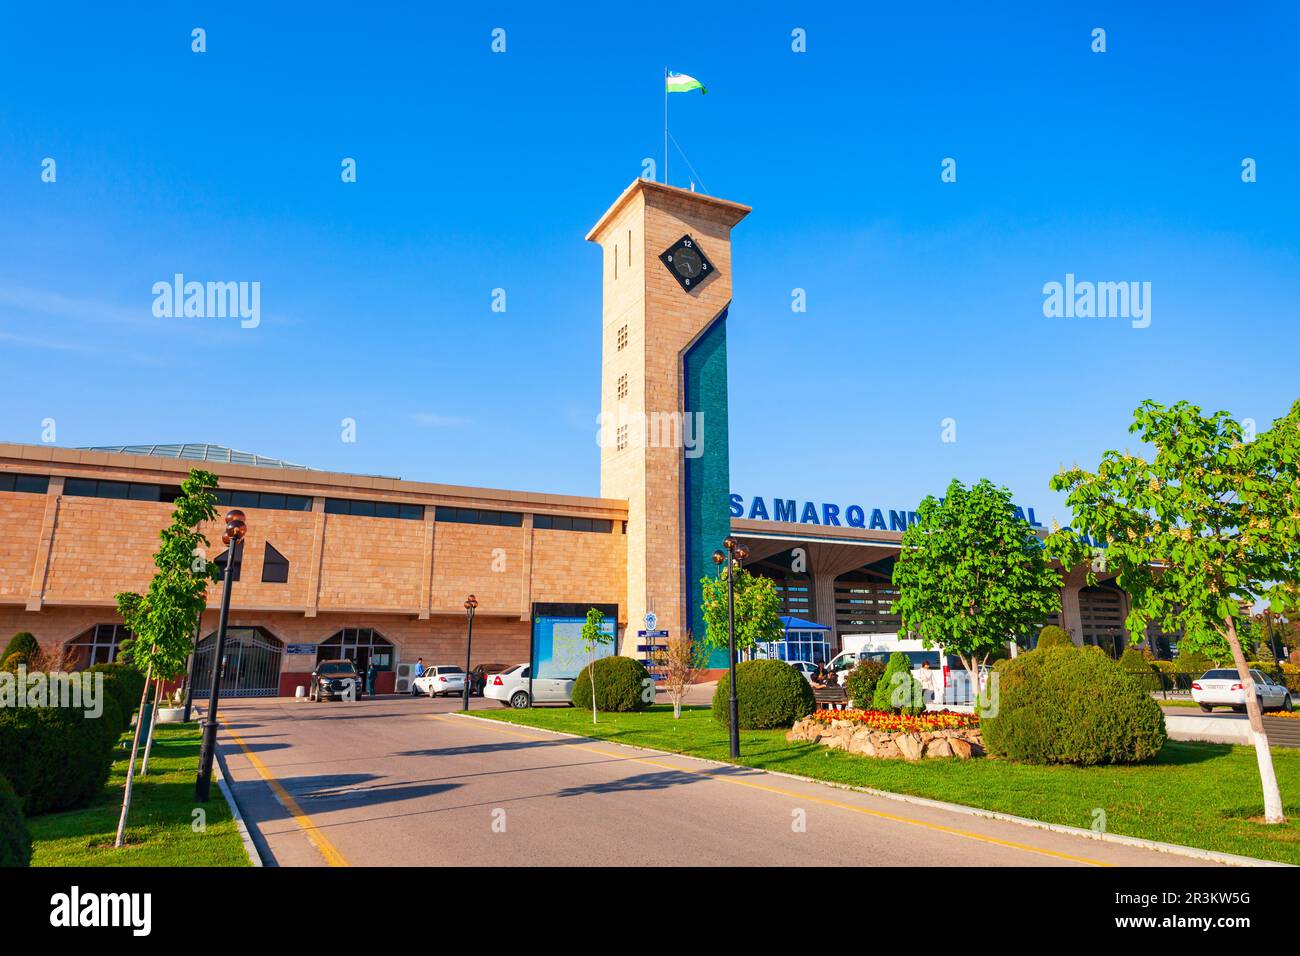 Samarkand, Uzbekistan - 16 aprile 2021: L'edificio Samarqand Vokzal è la principale stazione ferroviaria per passeggeri nella città di Samarkand, Uzbekistan Foto Stock